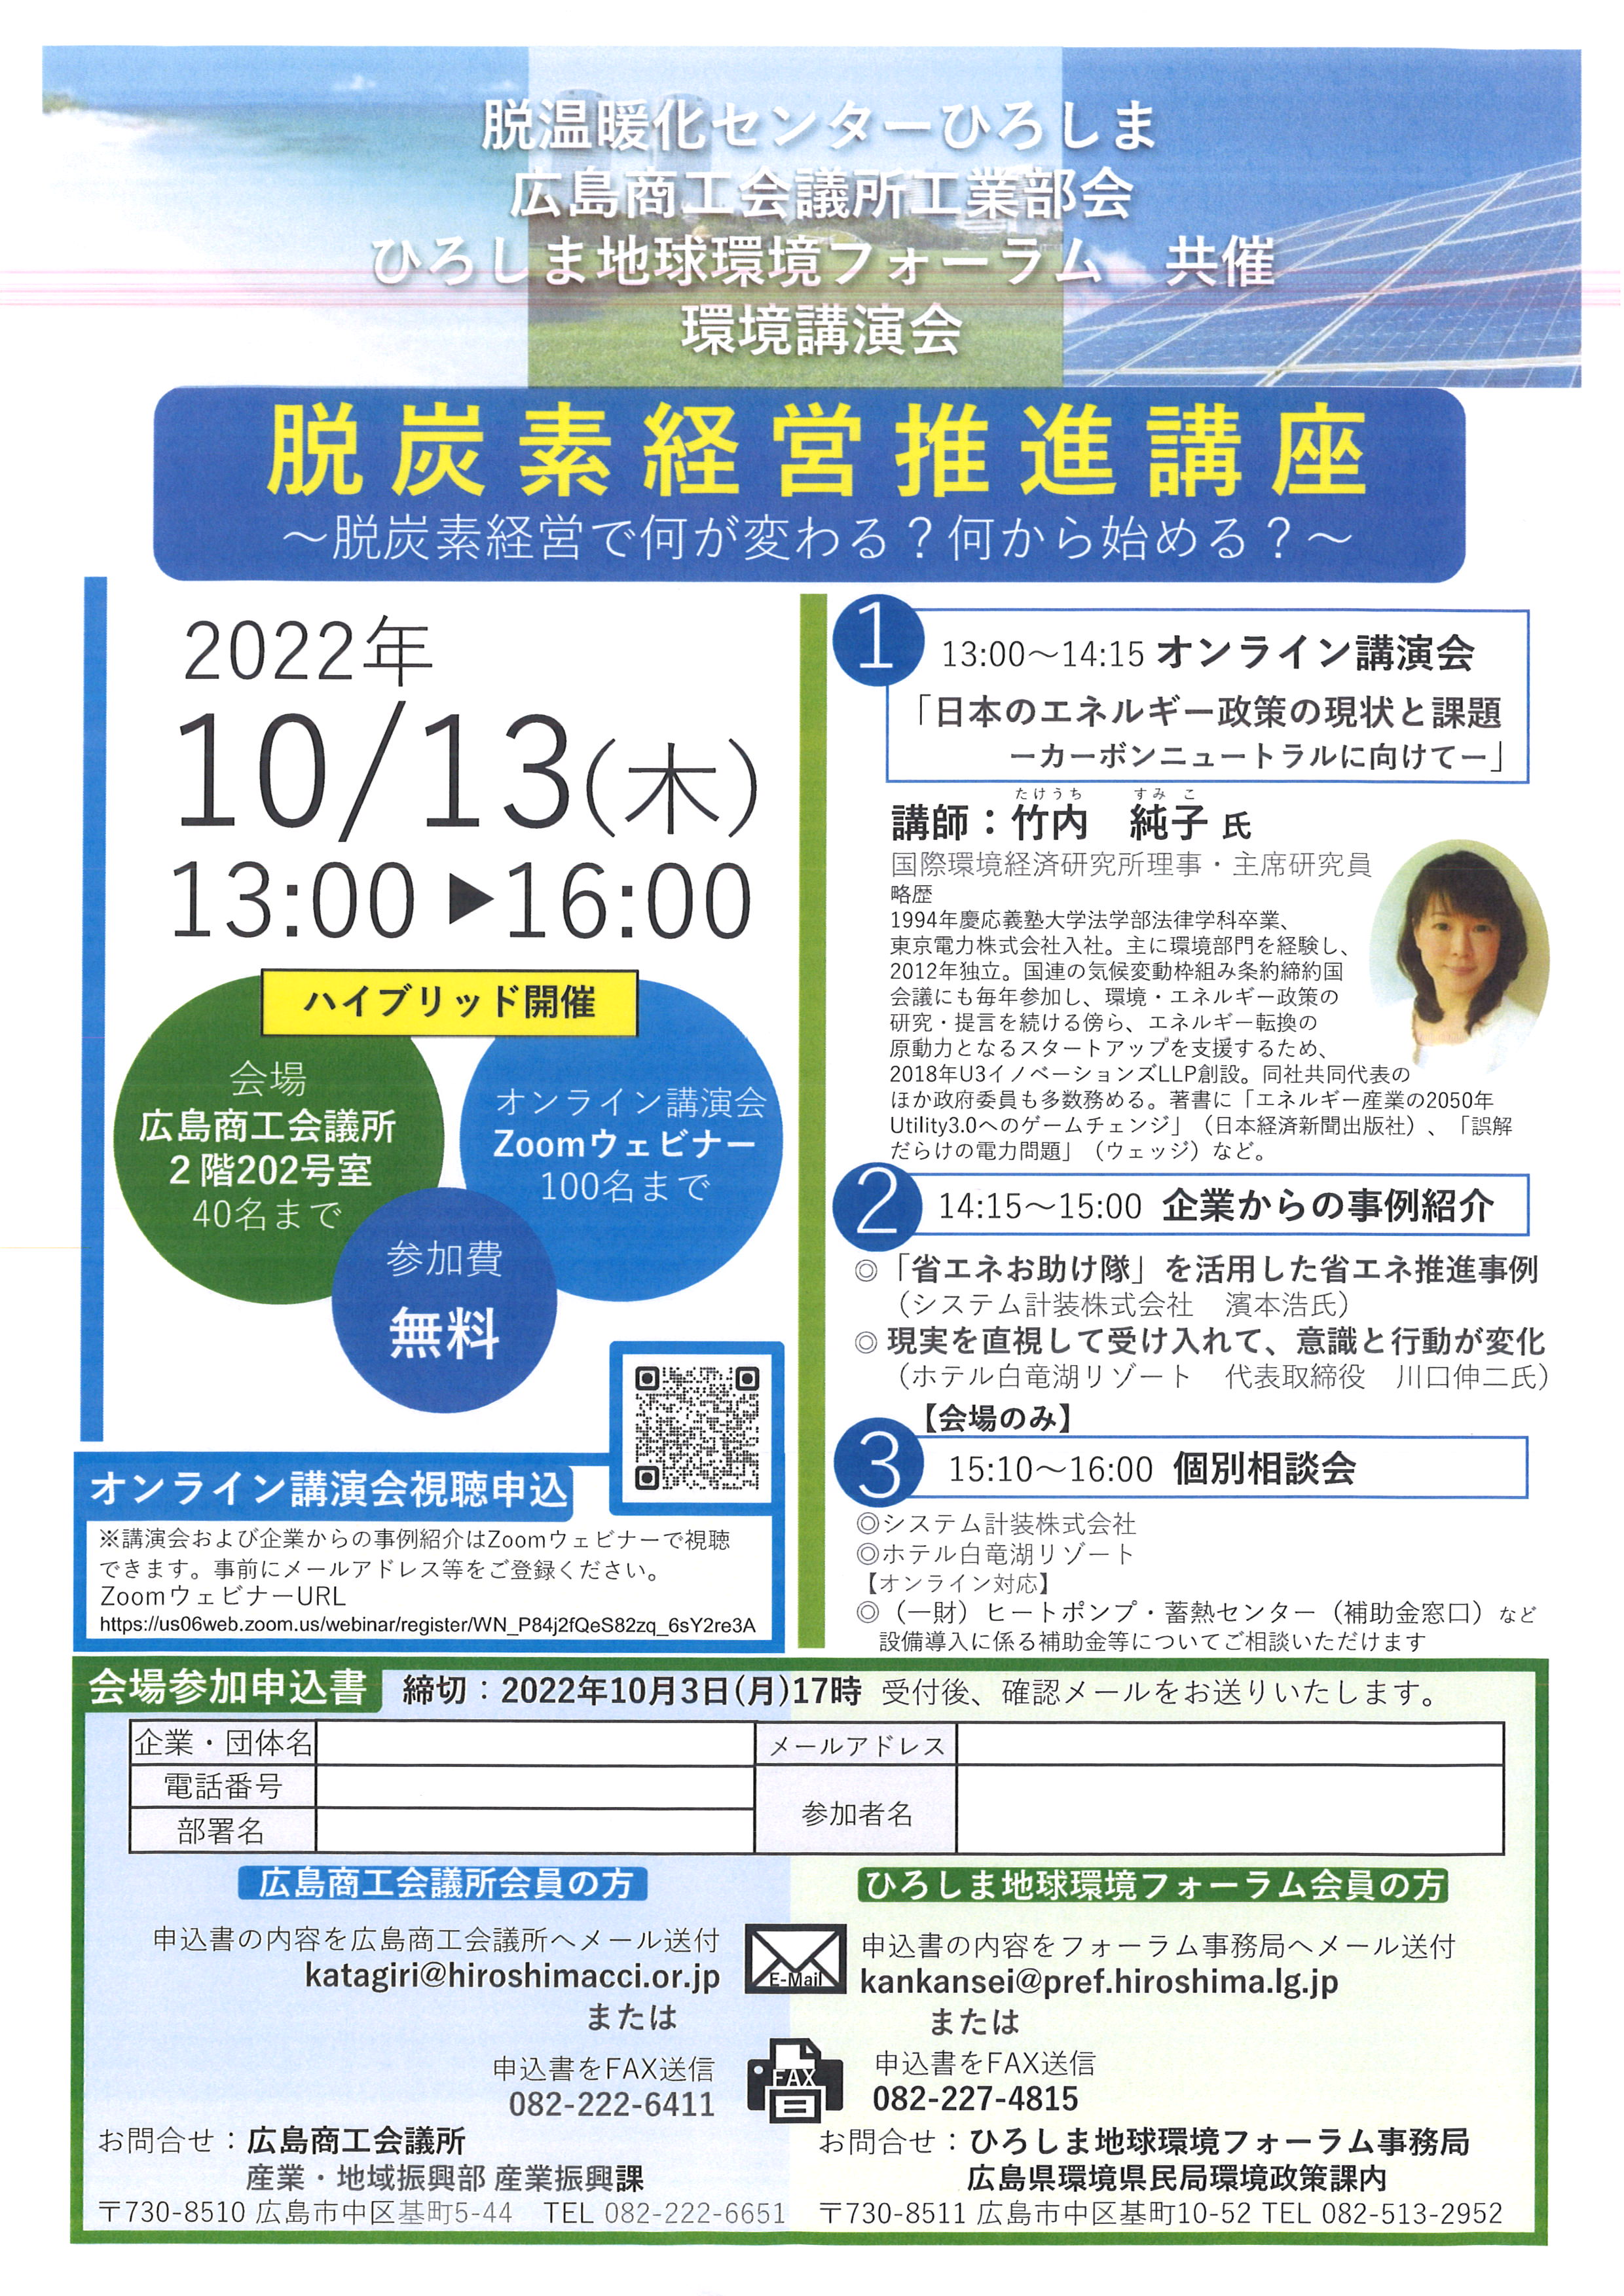 10月13日 『脱炭素経営推進講座』へ講師参加します。広島商工会議所・ひろしま地球環境フォーラム共催